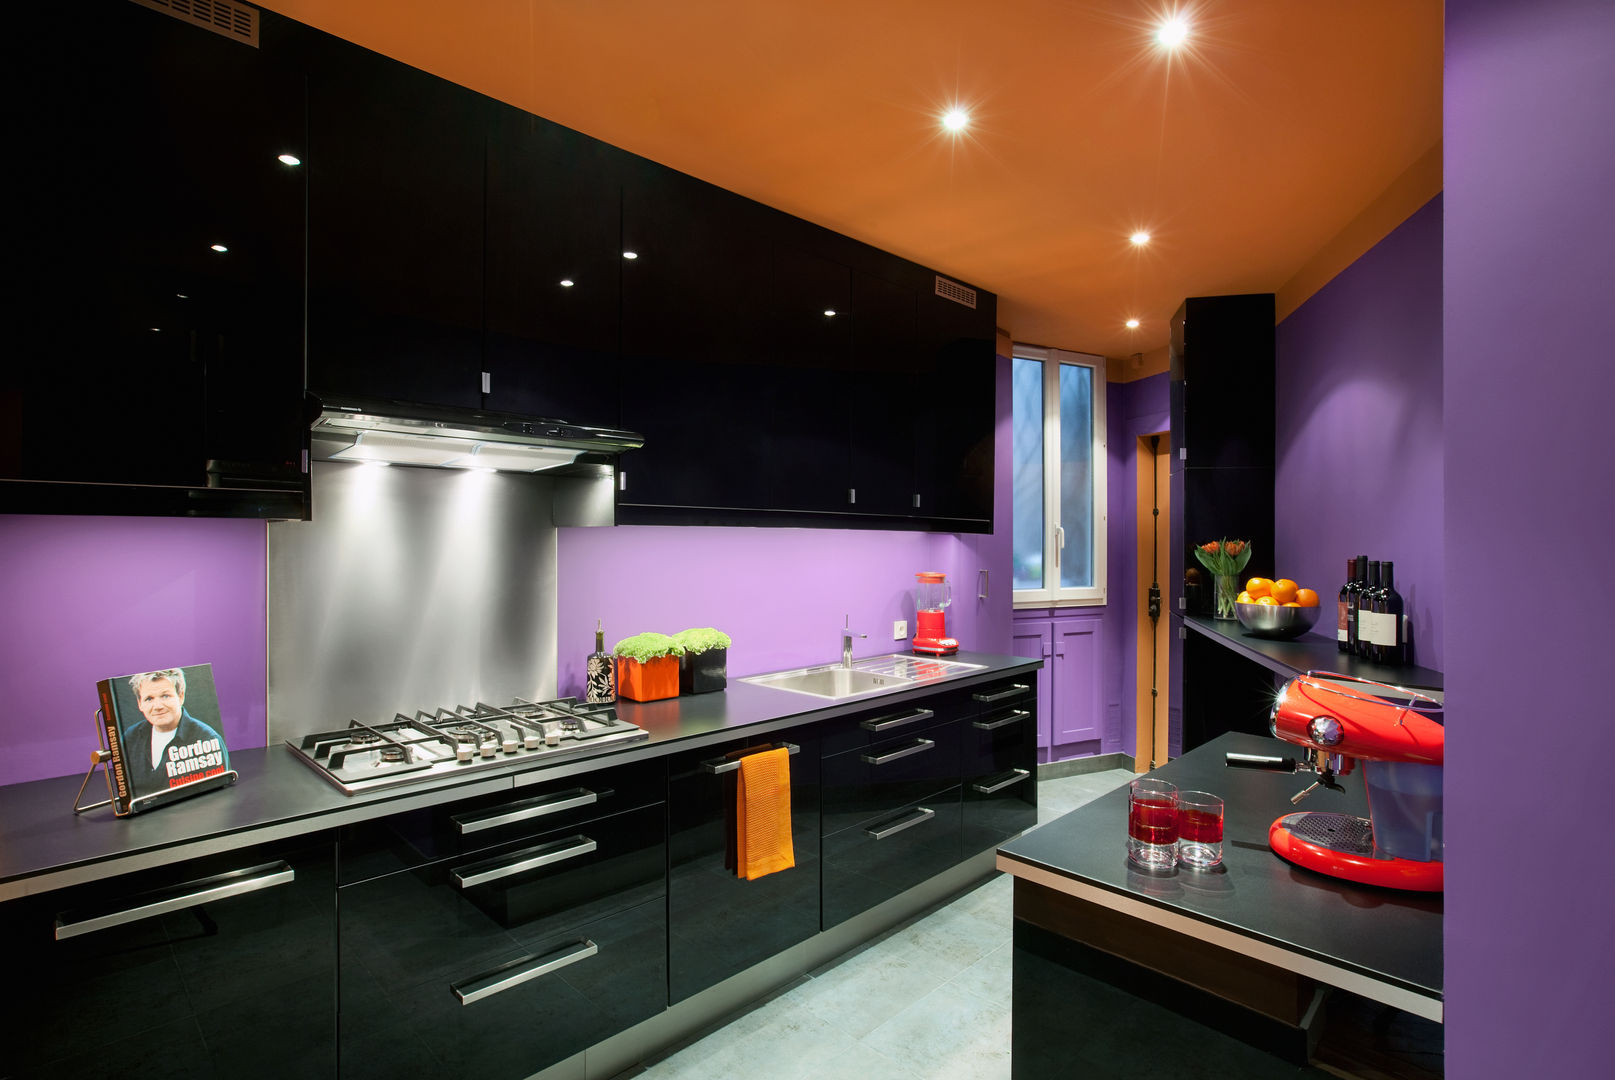 Une cuisine moderne, laquée noir, réalisée dans une petite pièce sombre, égayée par des couleurs vives. Alessandra Pisi / Pisi Design Architectes Petites cuisines MDF Cuisine moderne, cuisine noire